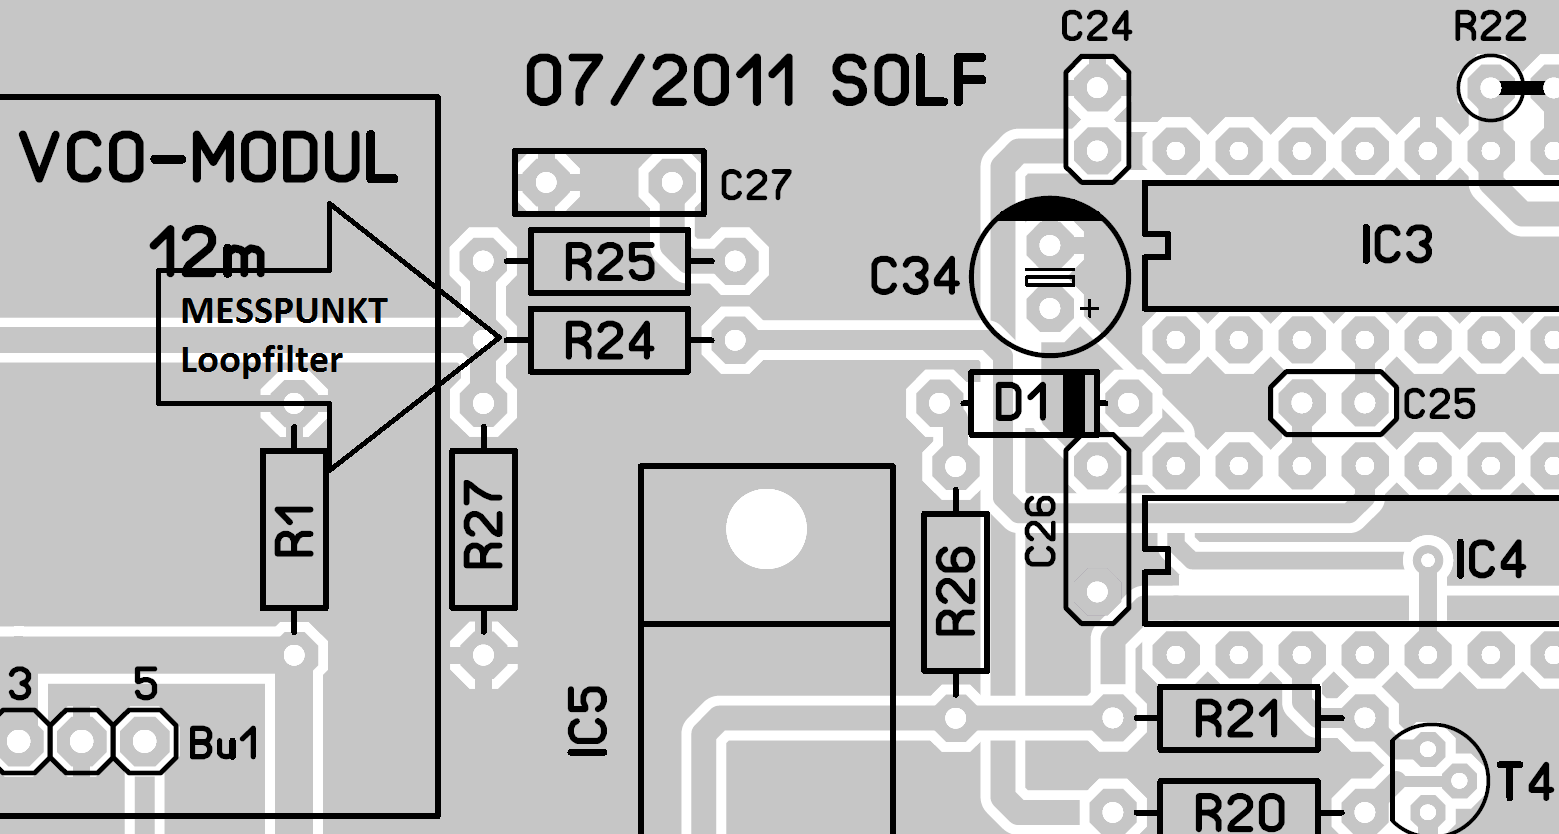 [ ] Gewähltes Band PIN 5 VCO 9V, alle anderen Bänder PIN 5 0V [ ] Überbrücke die CINCH Buchse auf dem LO Modul mit einem 50 Ohm Widerstand oder schließe alternativ dort eine Dummy Load an.